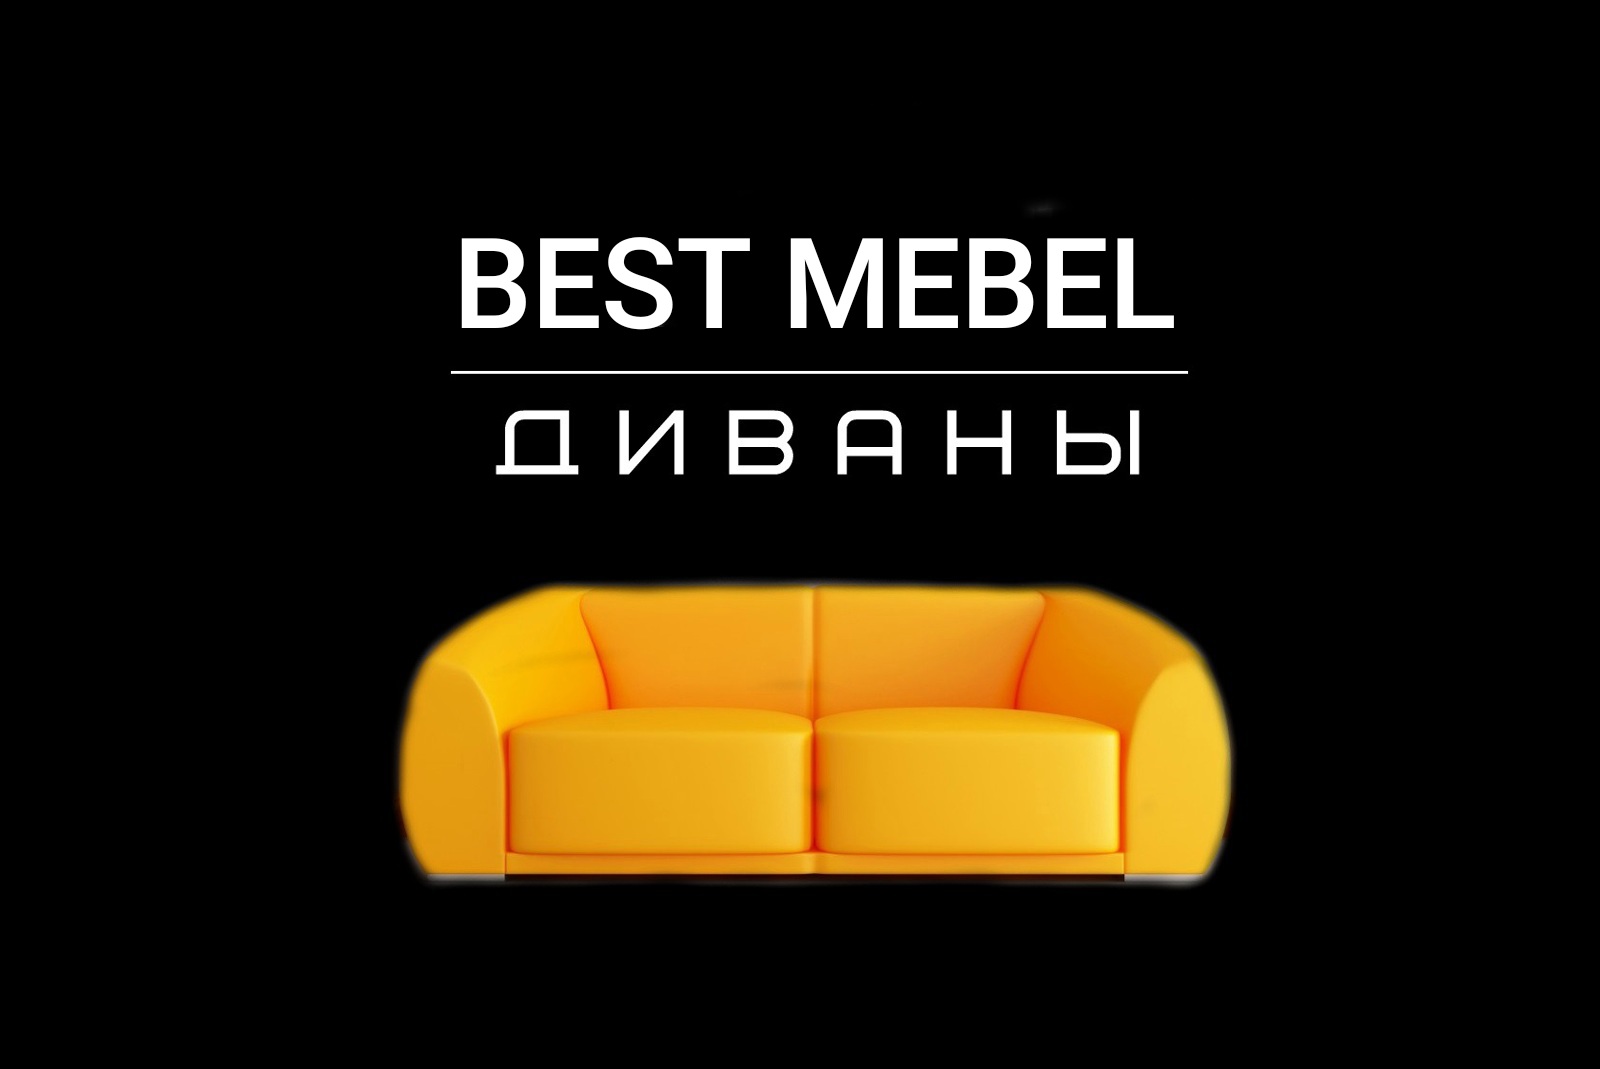 Купить бест мебель. Good мебель. Best мебель. Диваны Бэст мебель. Best mebel shop Красноярск.